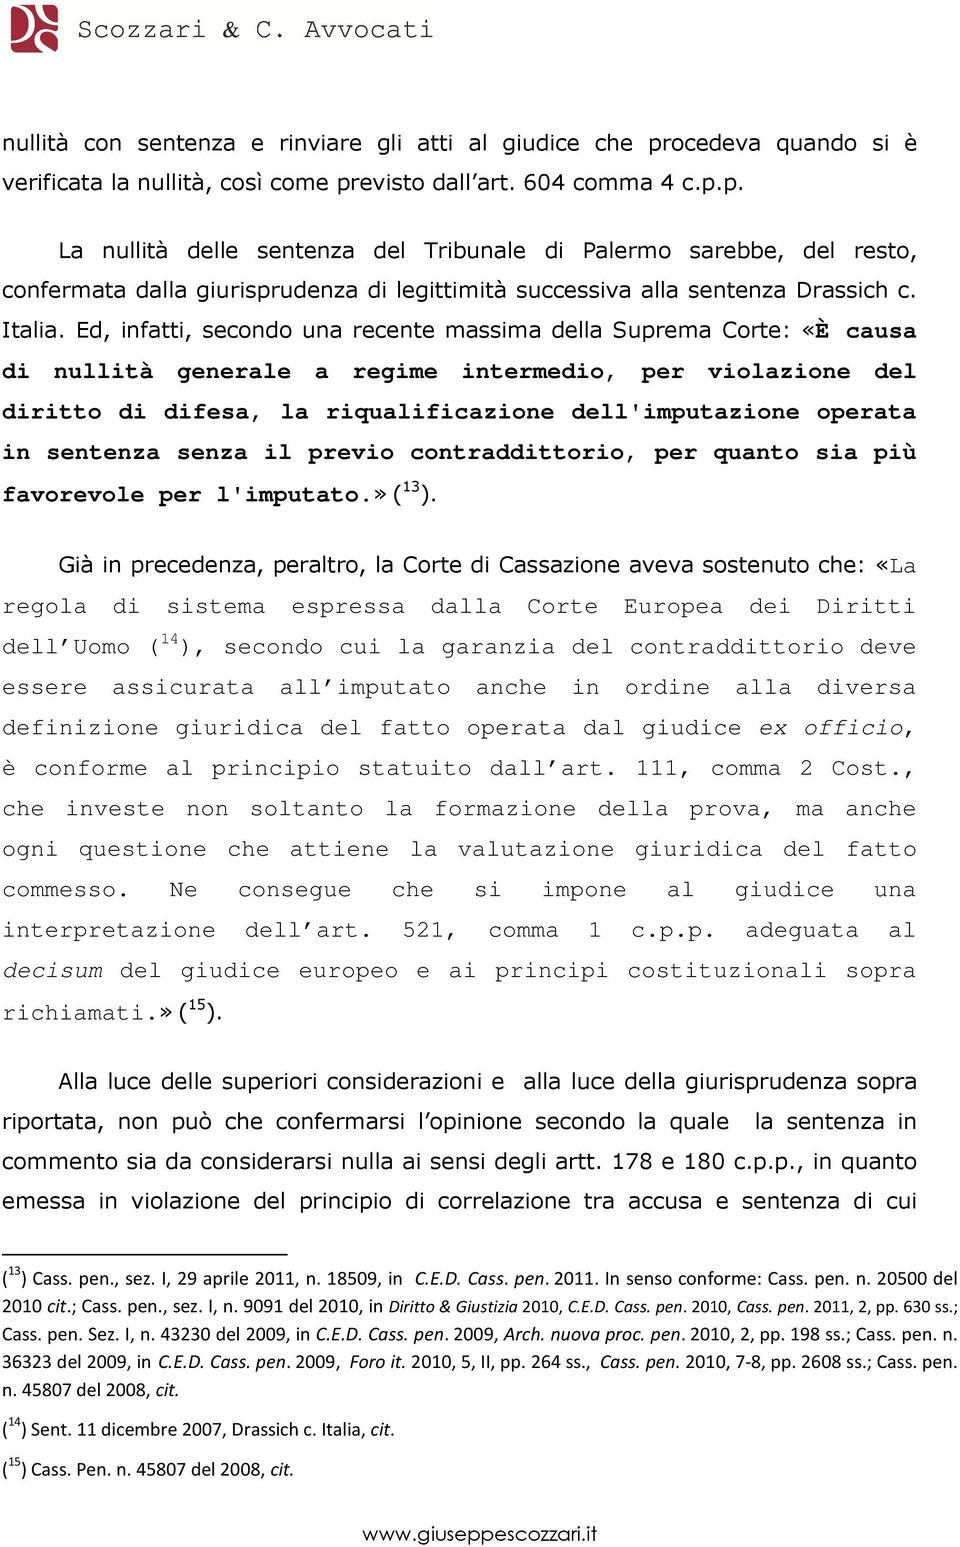 evisto dall art. 604 comma 4 c.p.p. La nullità delle sentenza del Tribunale di Palermo sarebbe, del resto, confermata dalla giurisprudenza di legittimità successiva alla sentenza Drassich c. Italia.